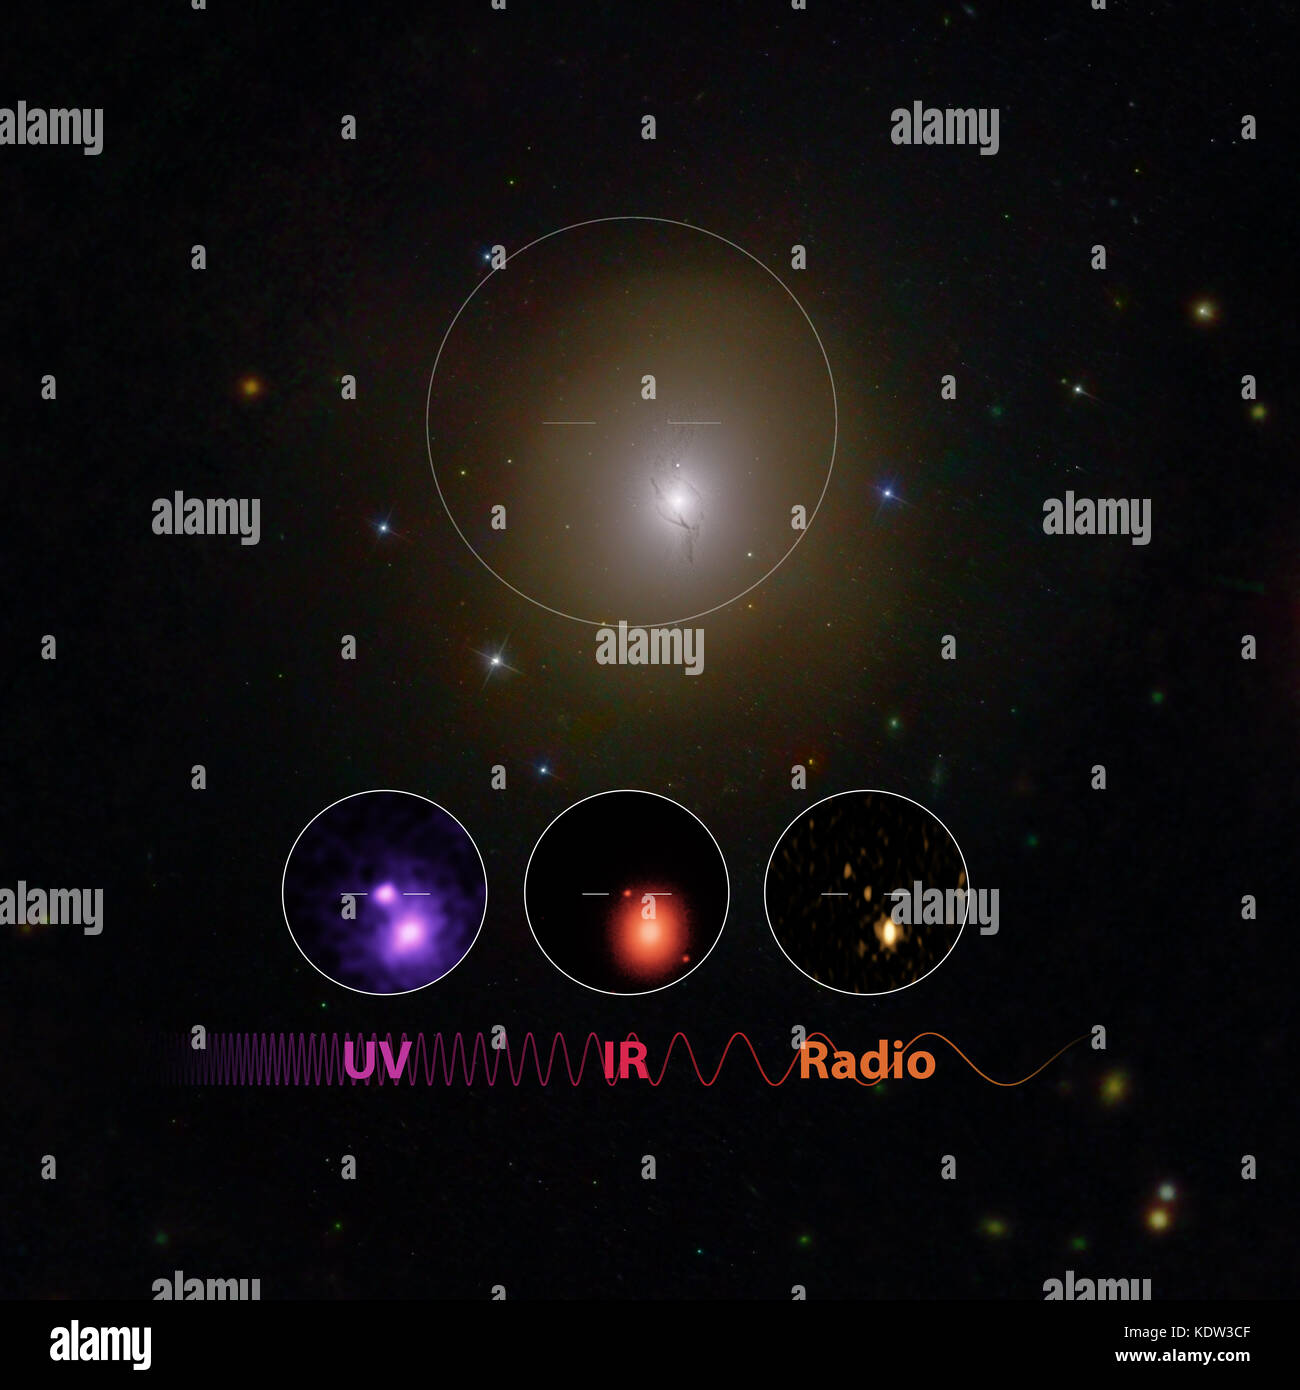 Washington, Stati Uniti d'America. Xvi oct, 2017. immagine fatta da caltech e la NASA mostra i raggi UV/IR/radio scoperta di stella di neutroni di fusione nel NGC 4993. Gli scienziati ha annunciato lunedì che essi hanno per la prima volta rilevato le increspature nello spazio e nel tempo noto come le onde gravitazionali così come la luce da una spettacolare collisione di due stelle di neutroni. Credito: robert hurt di caltech, mansi kasliwal di caltech, gregg hallinan di caltech, Phil Evans della NASA e della collaborazione di crescita/xinhua/alamy live news Foto Stock